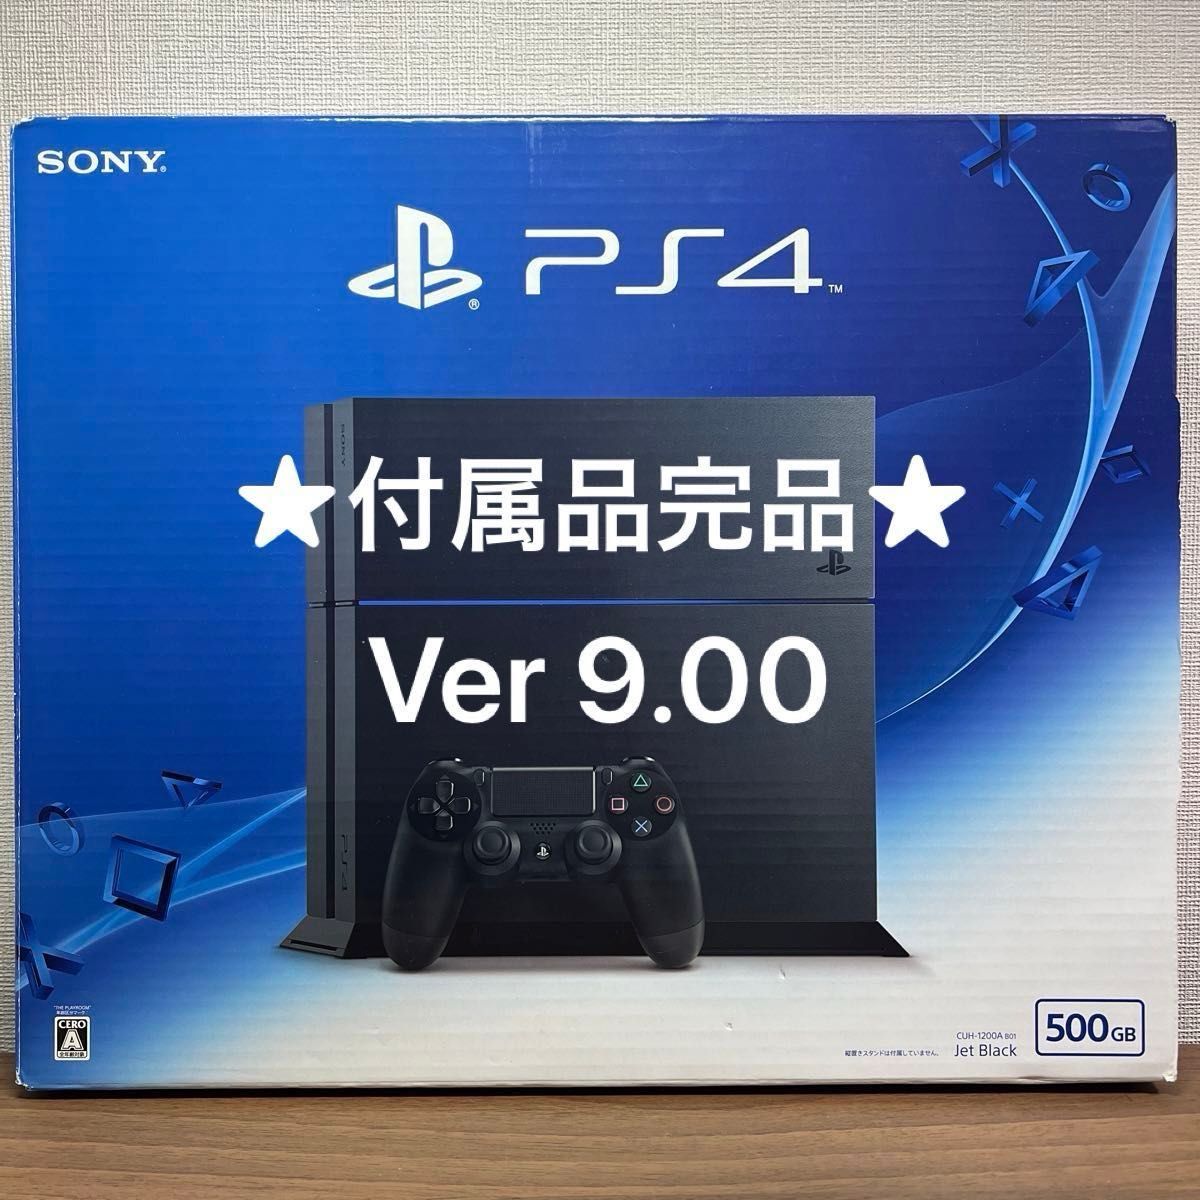 ★付属品完品★ PlayStation4 CUH-1200A 500GB ジェットブラック Ver 9.00